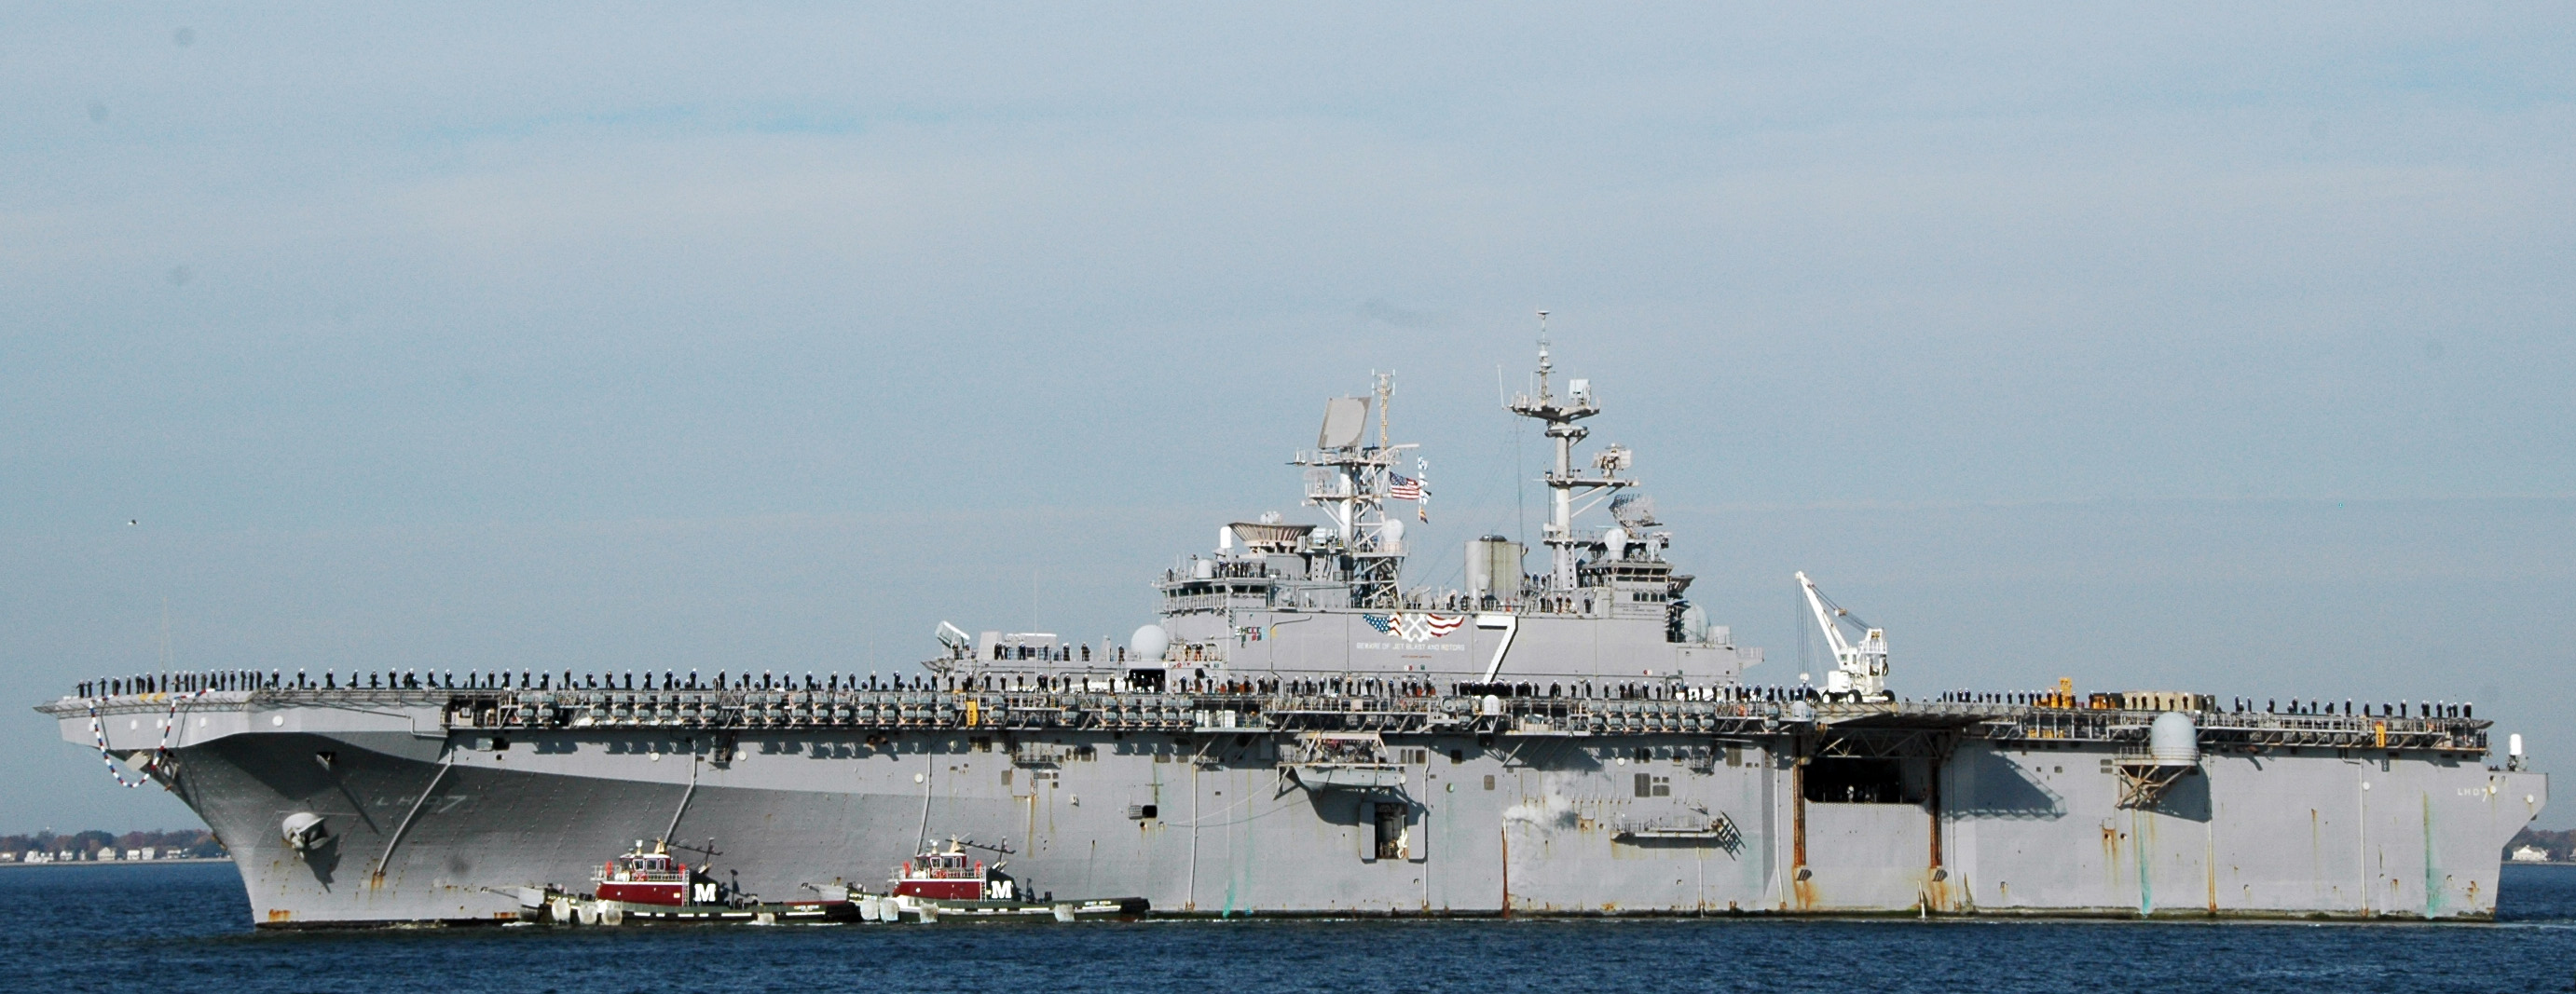 미 2함대를 상징하는 항공모함인 USS 이오 지마호.